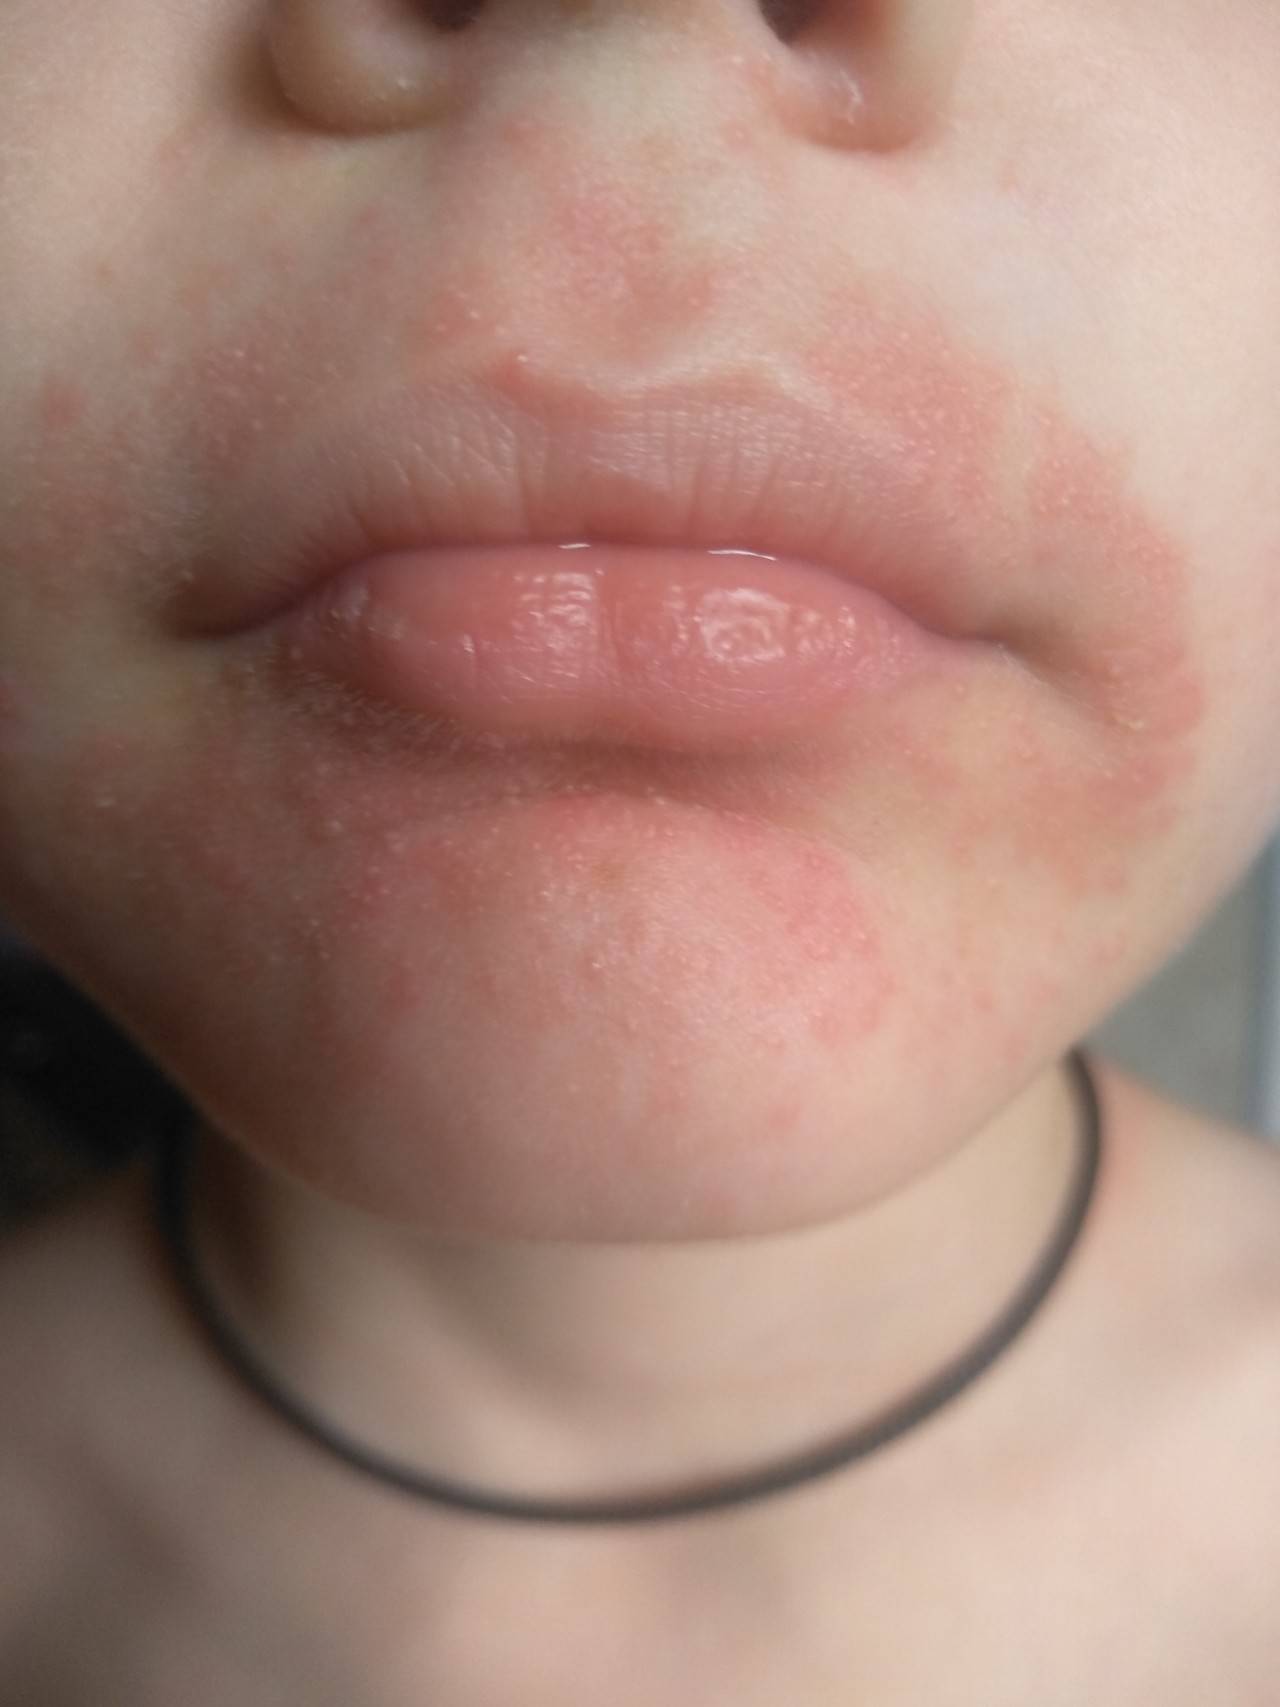 Краснота вокруг носа - причины шелушения и как лечить